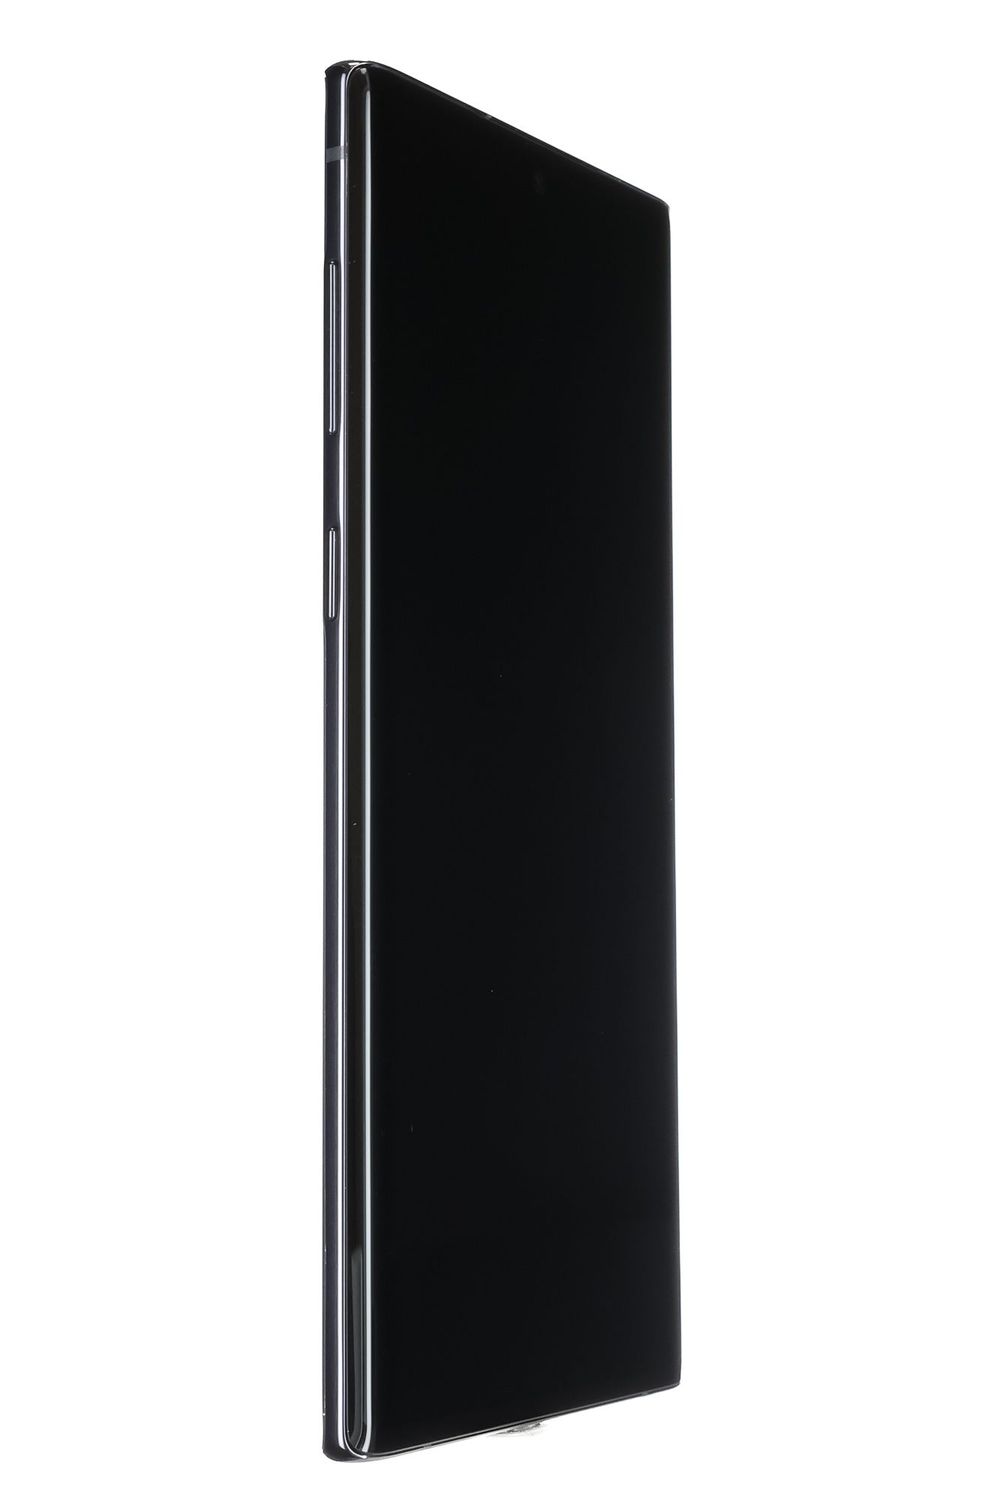 Κινητό τηλέφωνο Samsung Galaxy Note 10 5G, Aura Black, 256 GB, Bun